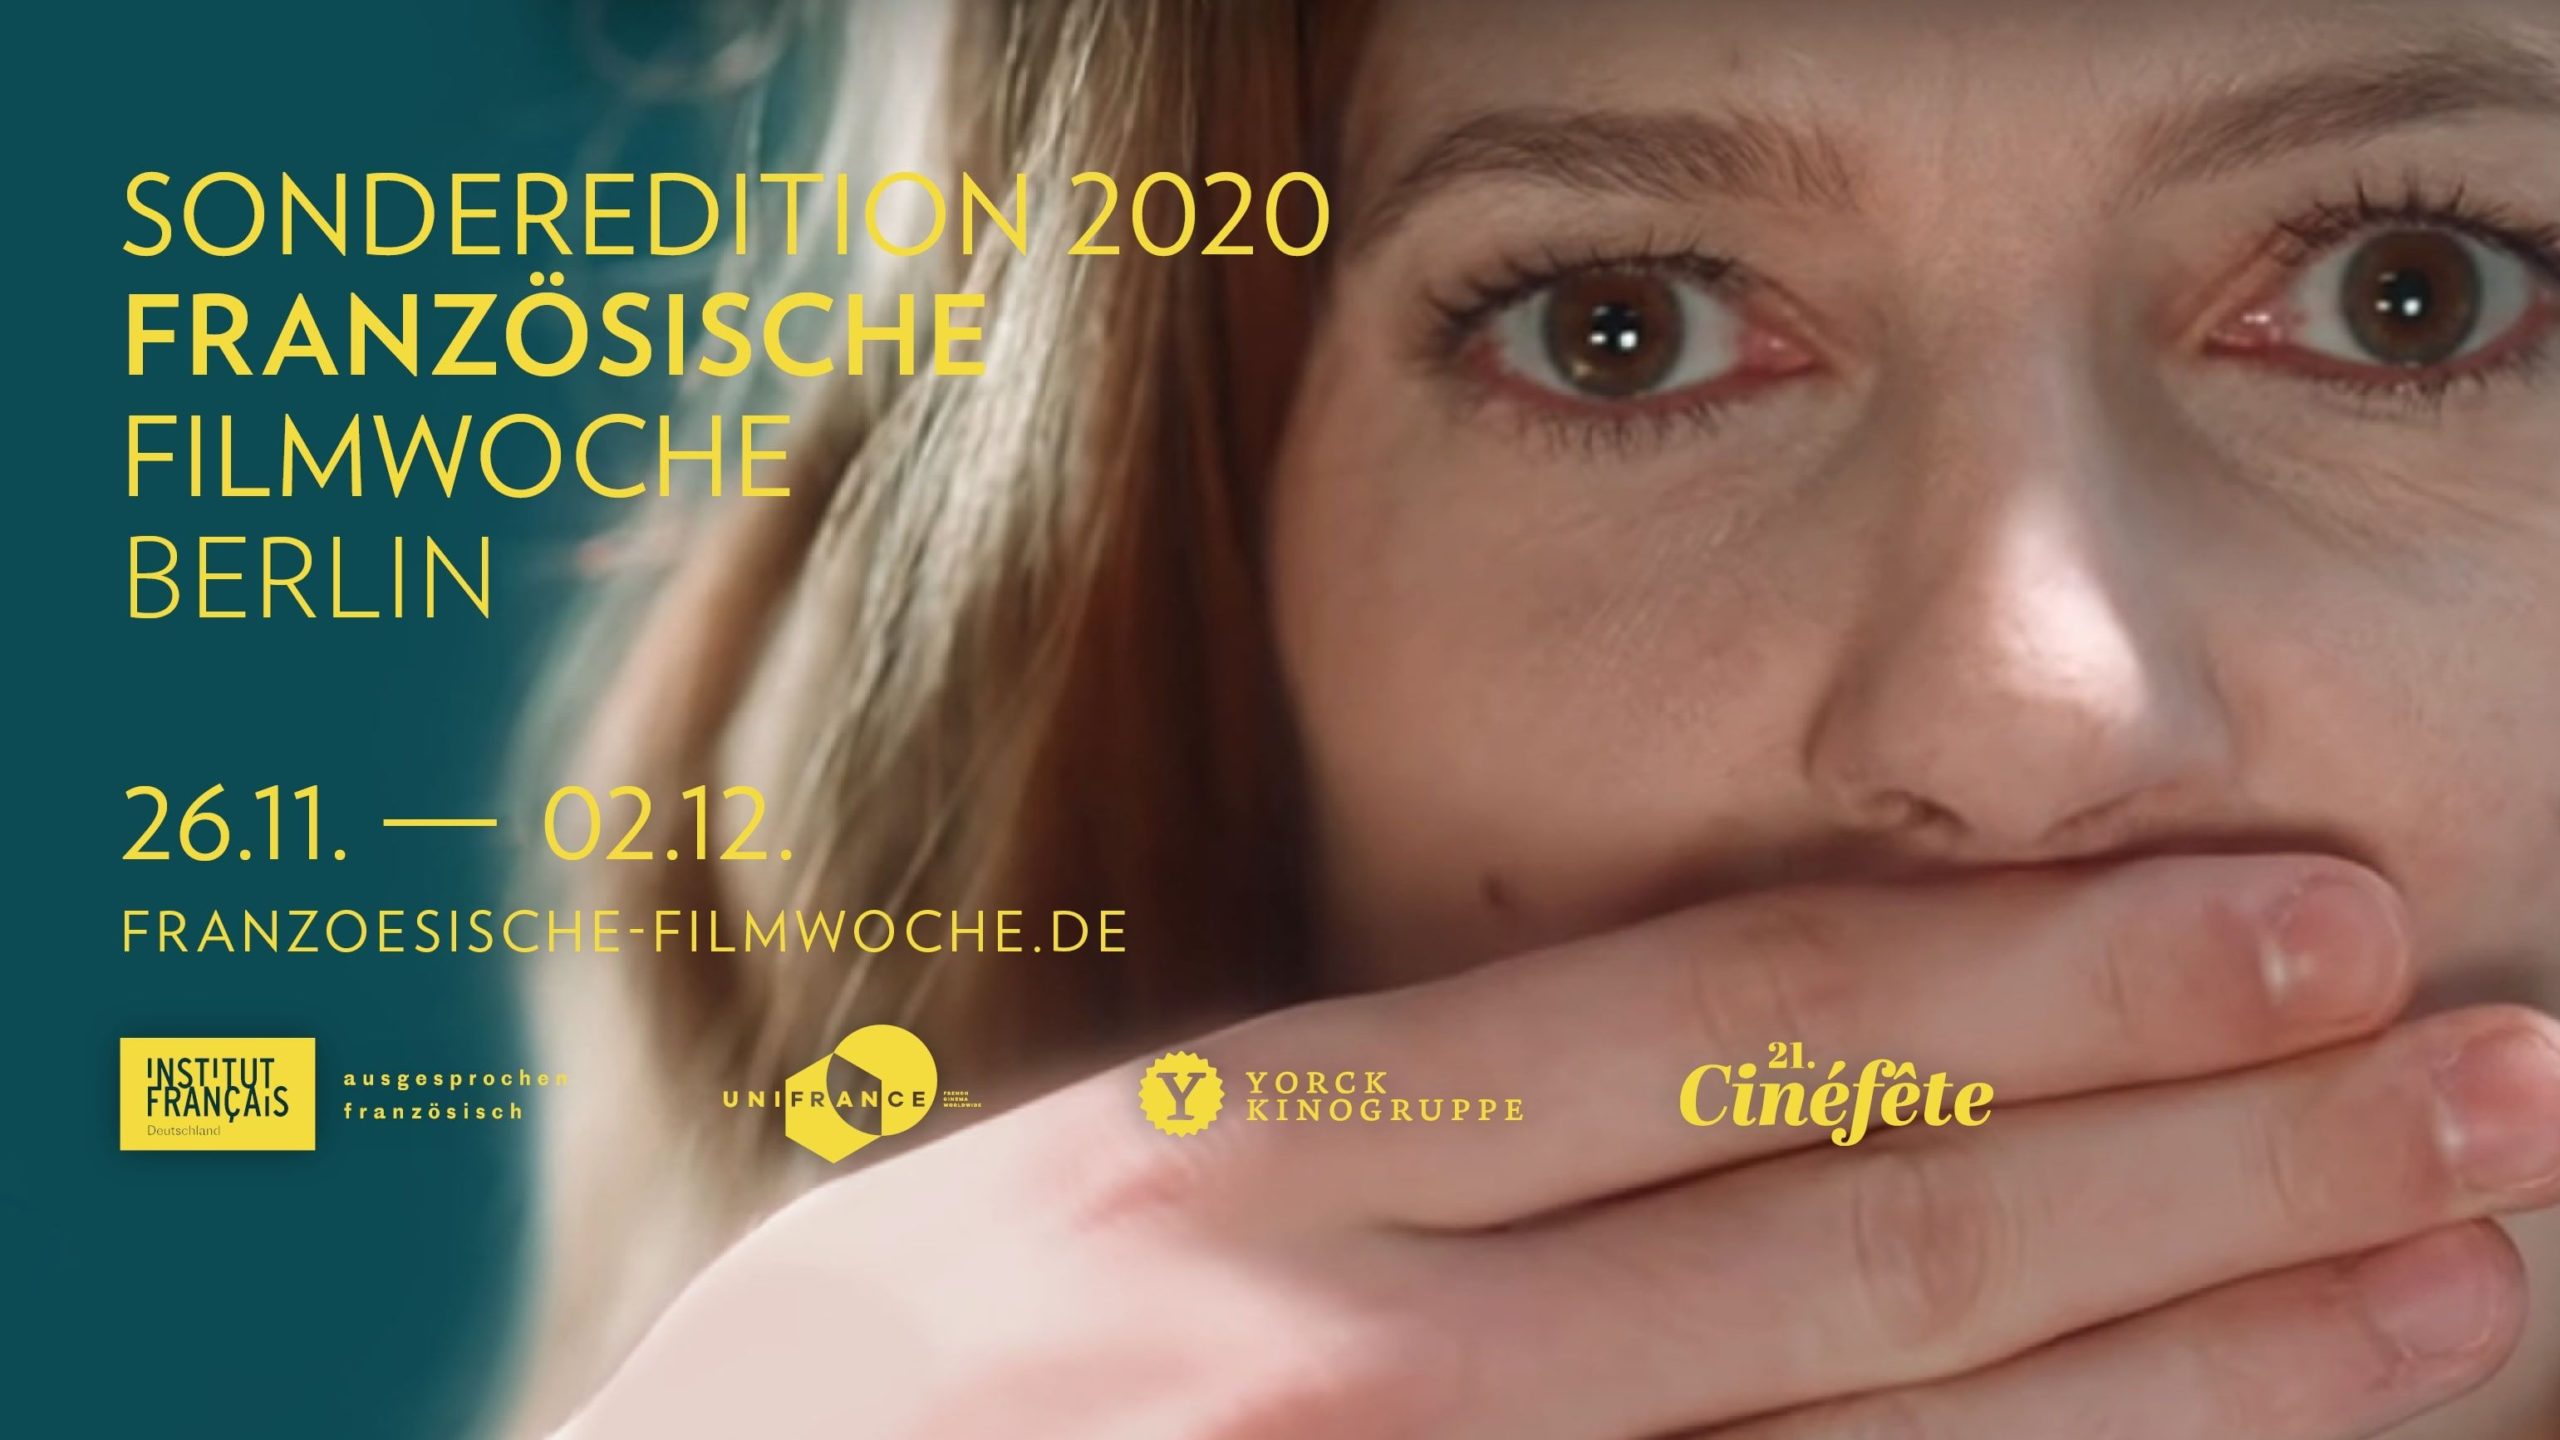 Franzoesische Filmwoche Berlin 2020 2